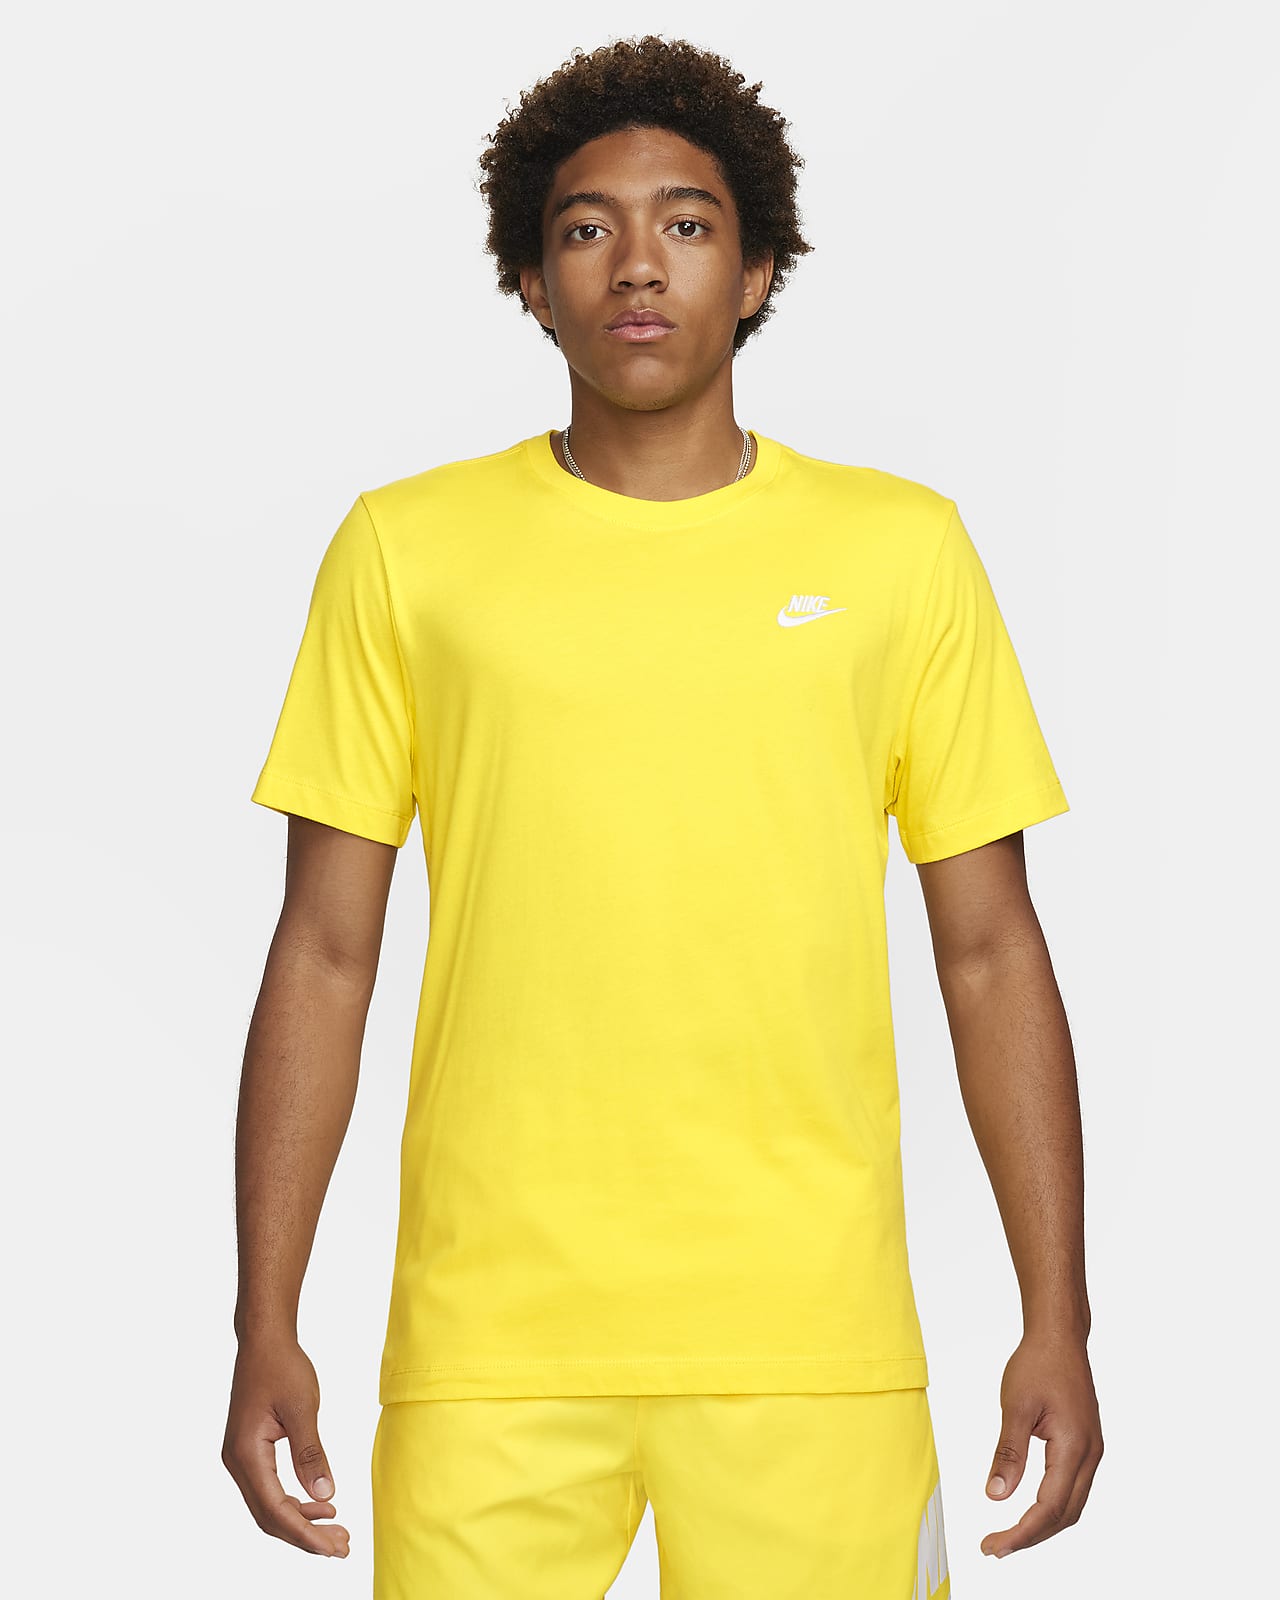 Nike Sportswear BeTrue Men's T-Shirt